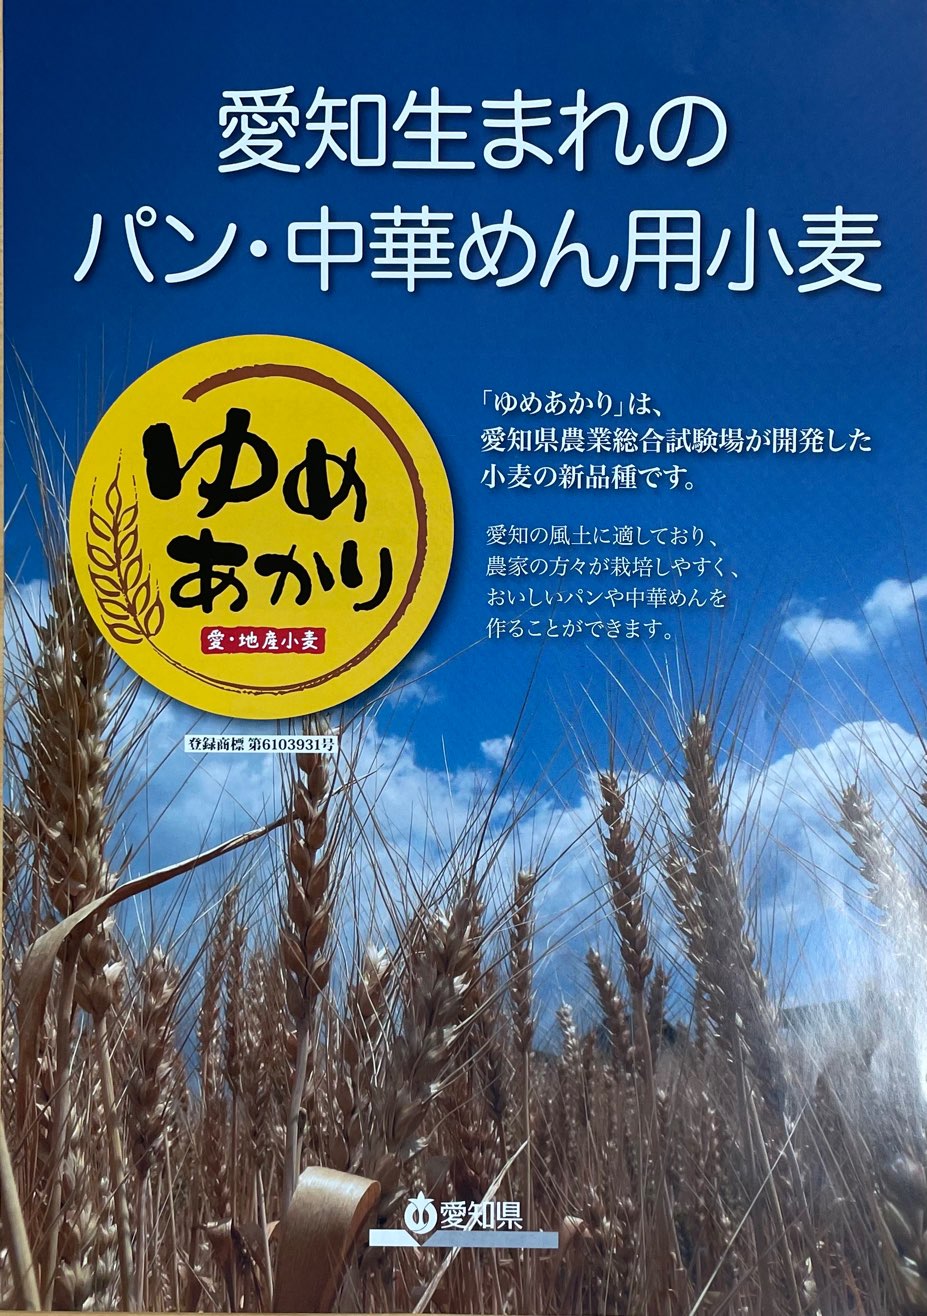 ゆめあかり 25kg 【興亜食糧】愛知県産小麦...の紹介画像2